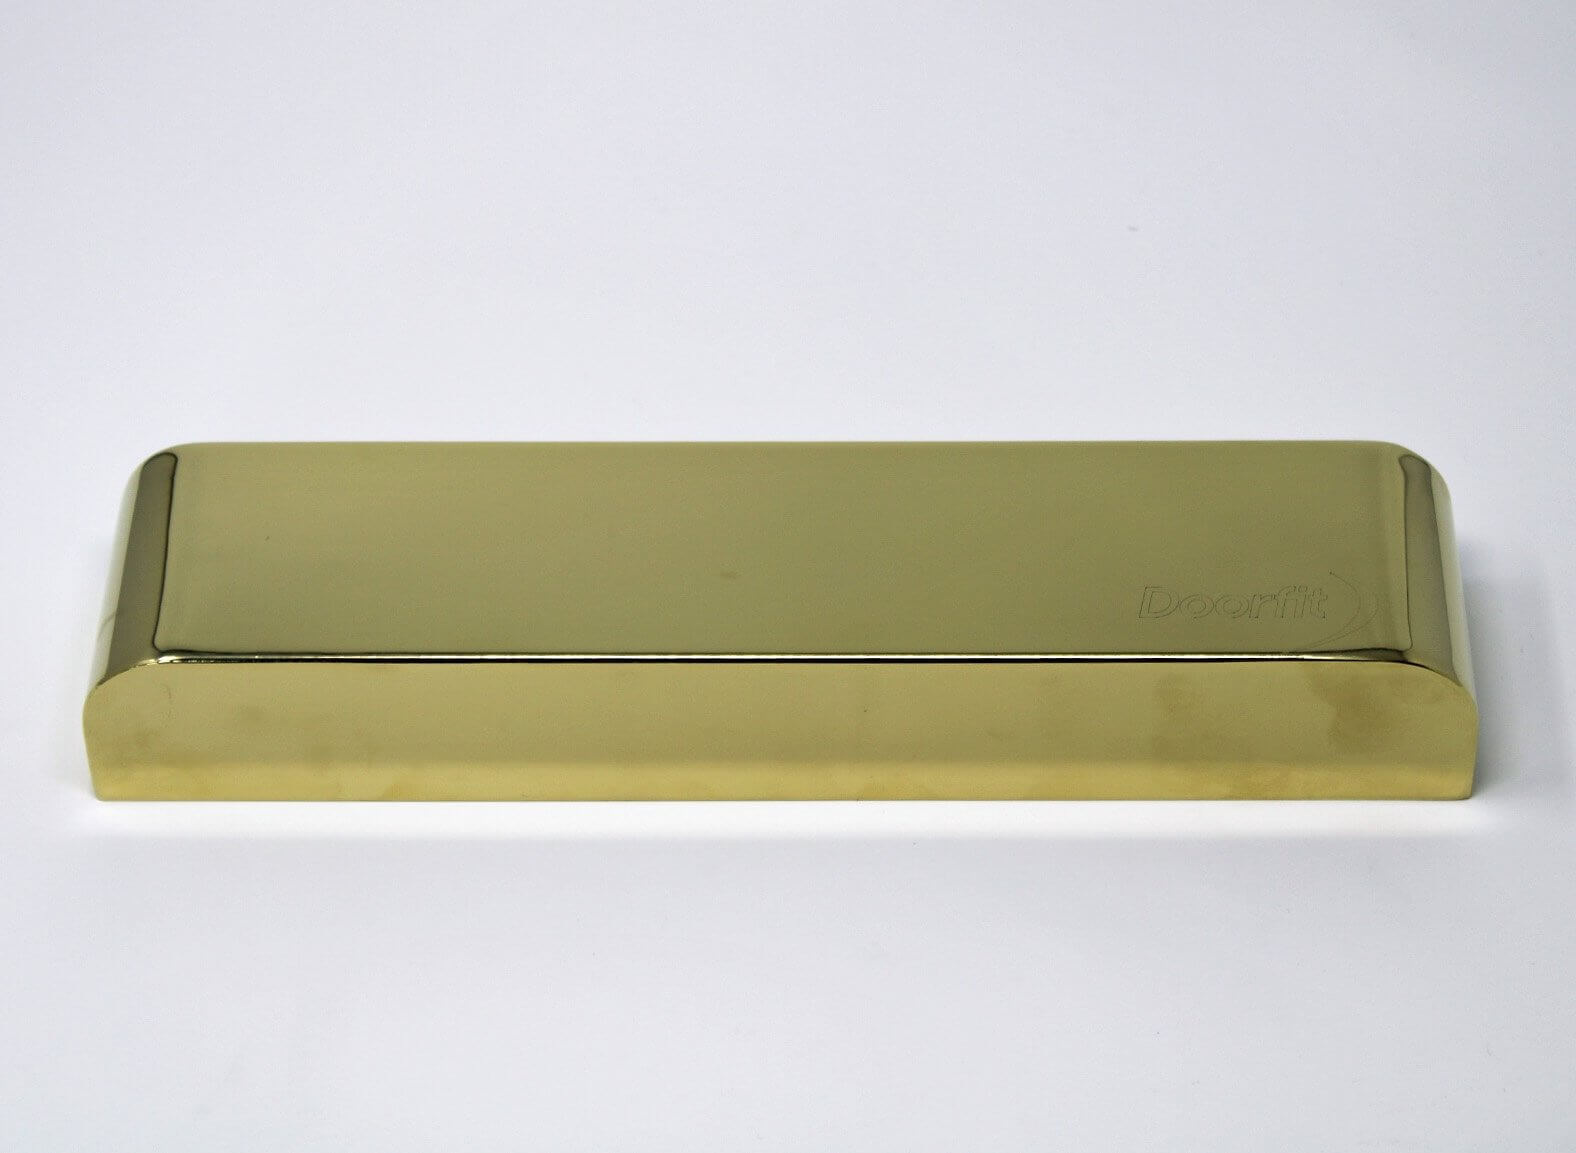 Doorfit 2-4 Backcheck Door Closer Polished Brass ICK1953V